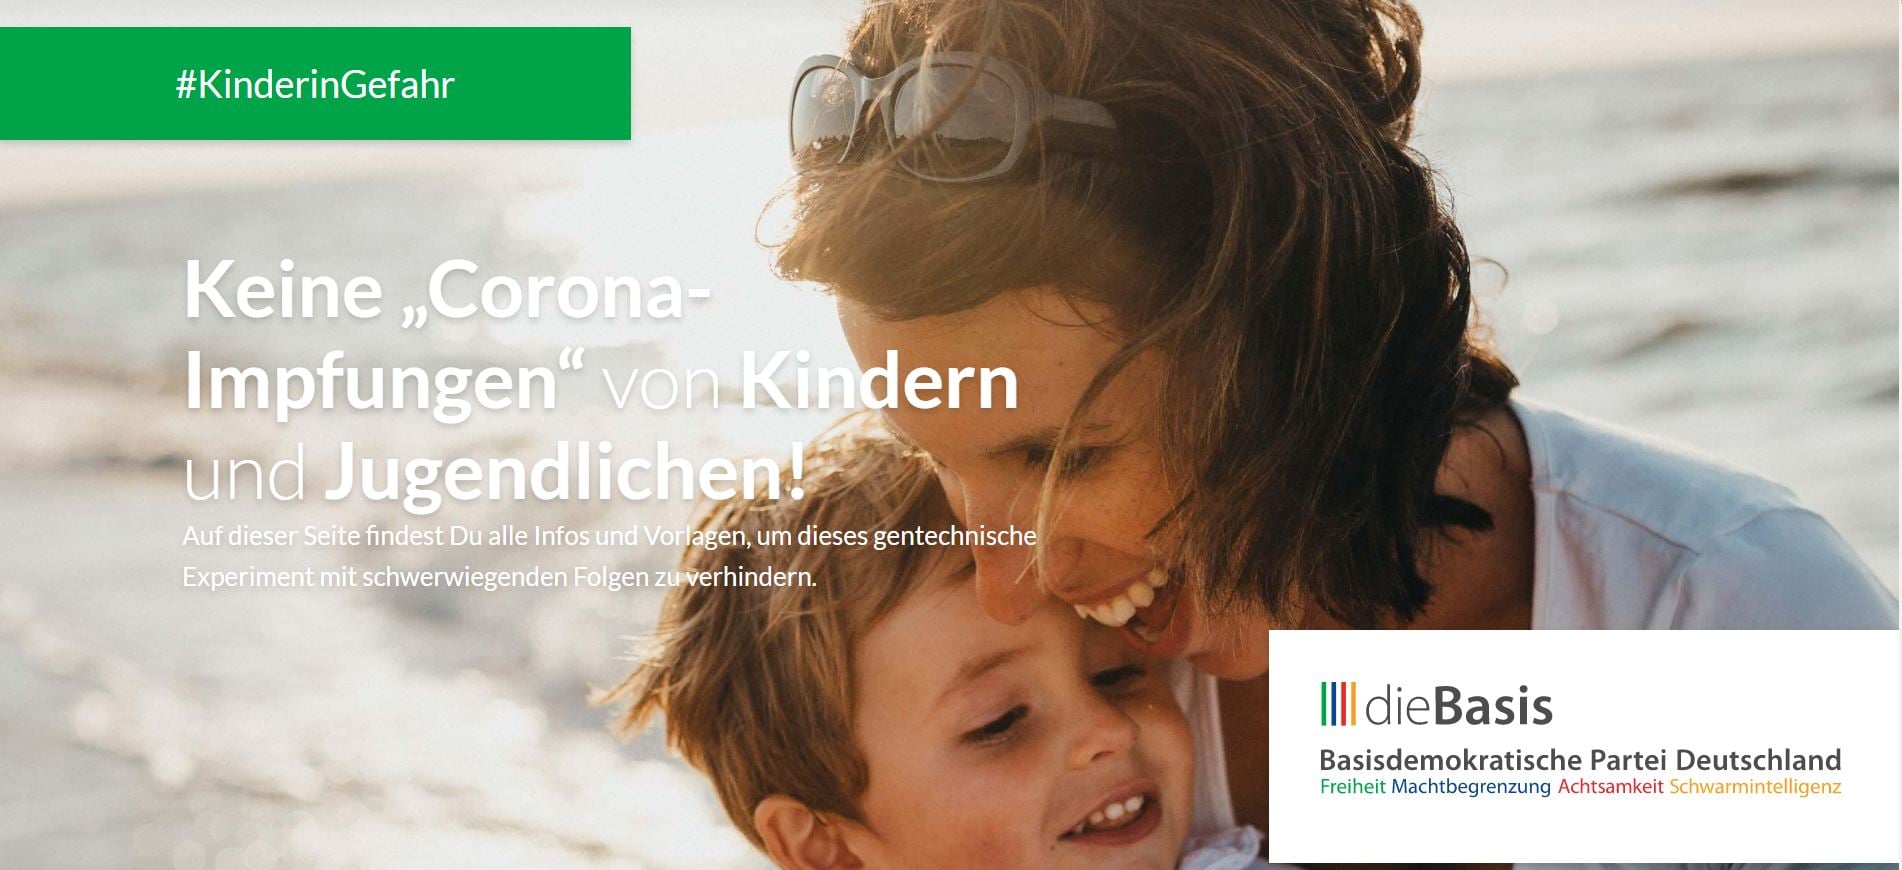 You are currently viewing Keine „CORONA-Impfungen“ von Kinder und Jugendlichen!